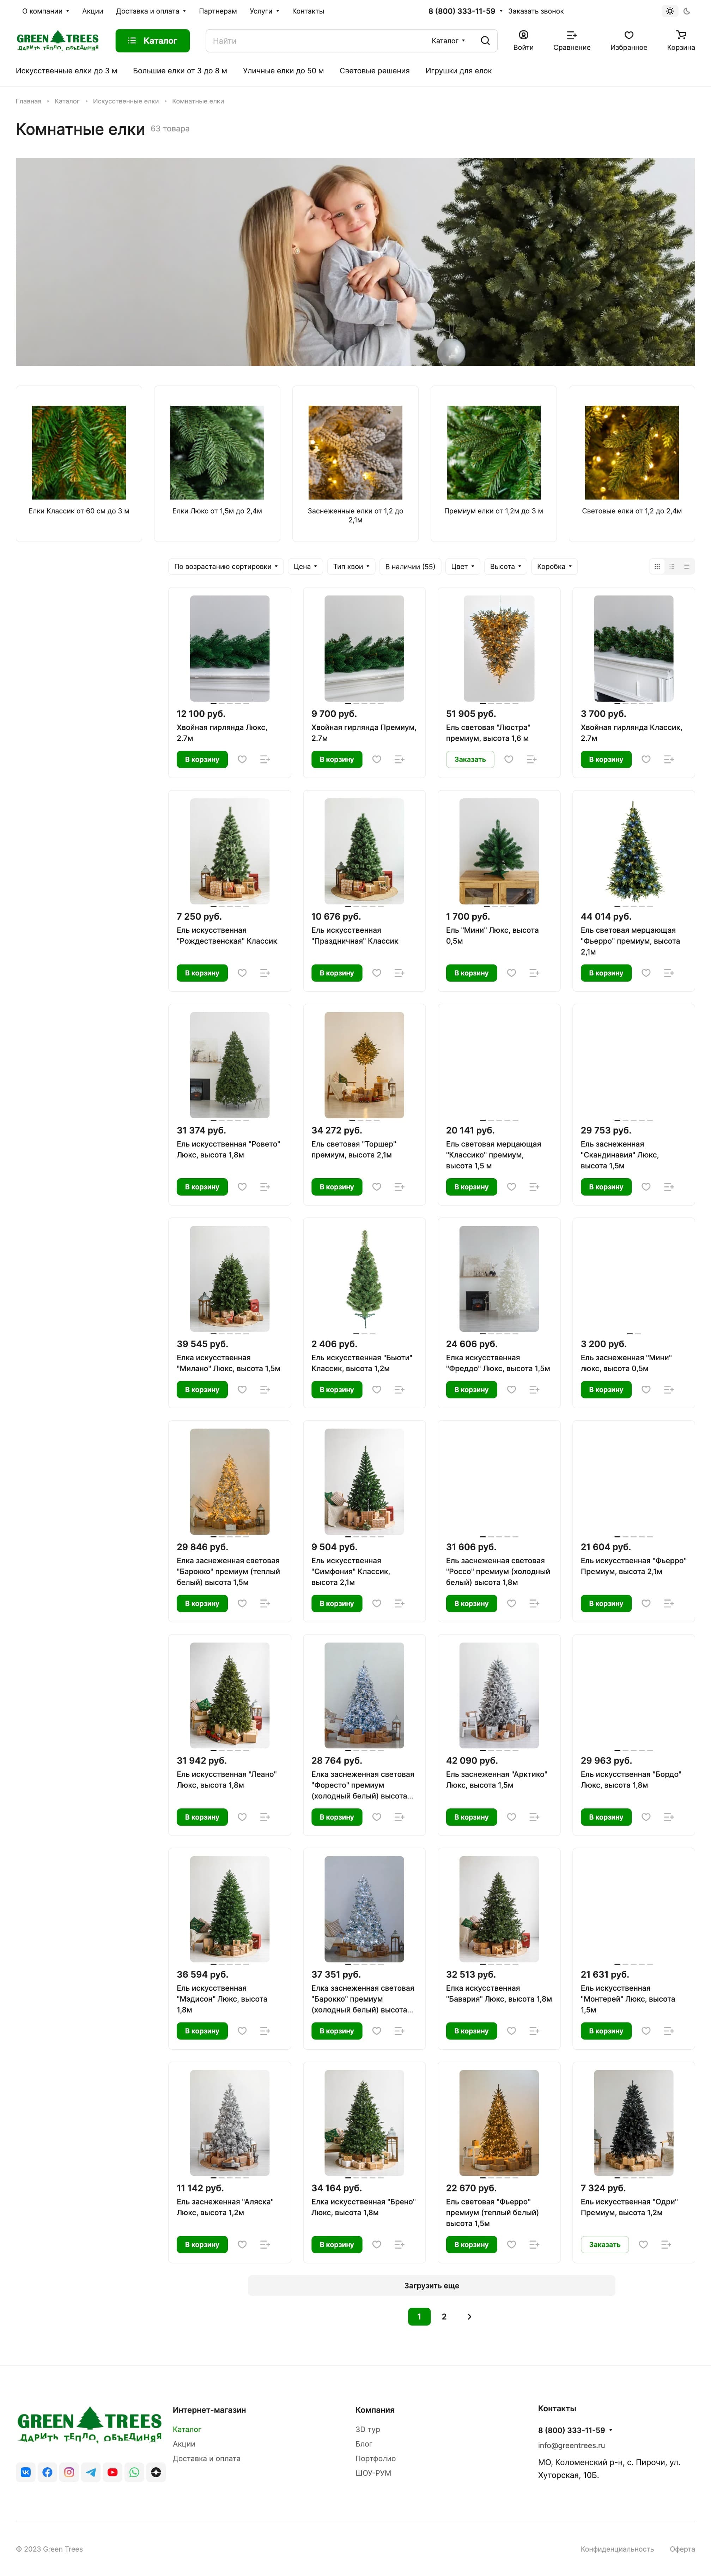 Пример посадочной страницы с каталогом для продажи новогодних елок